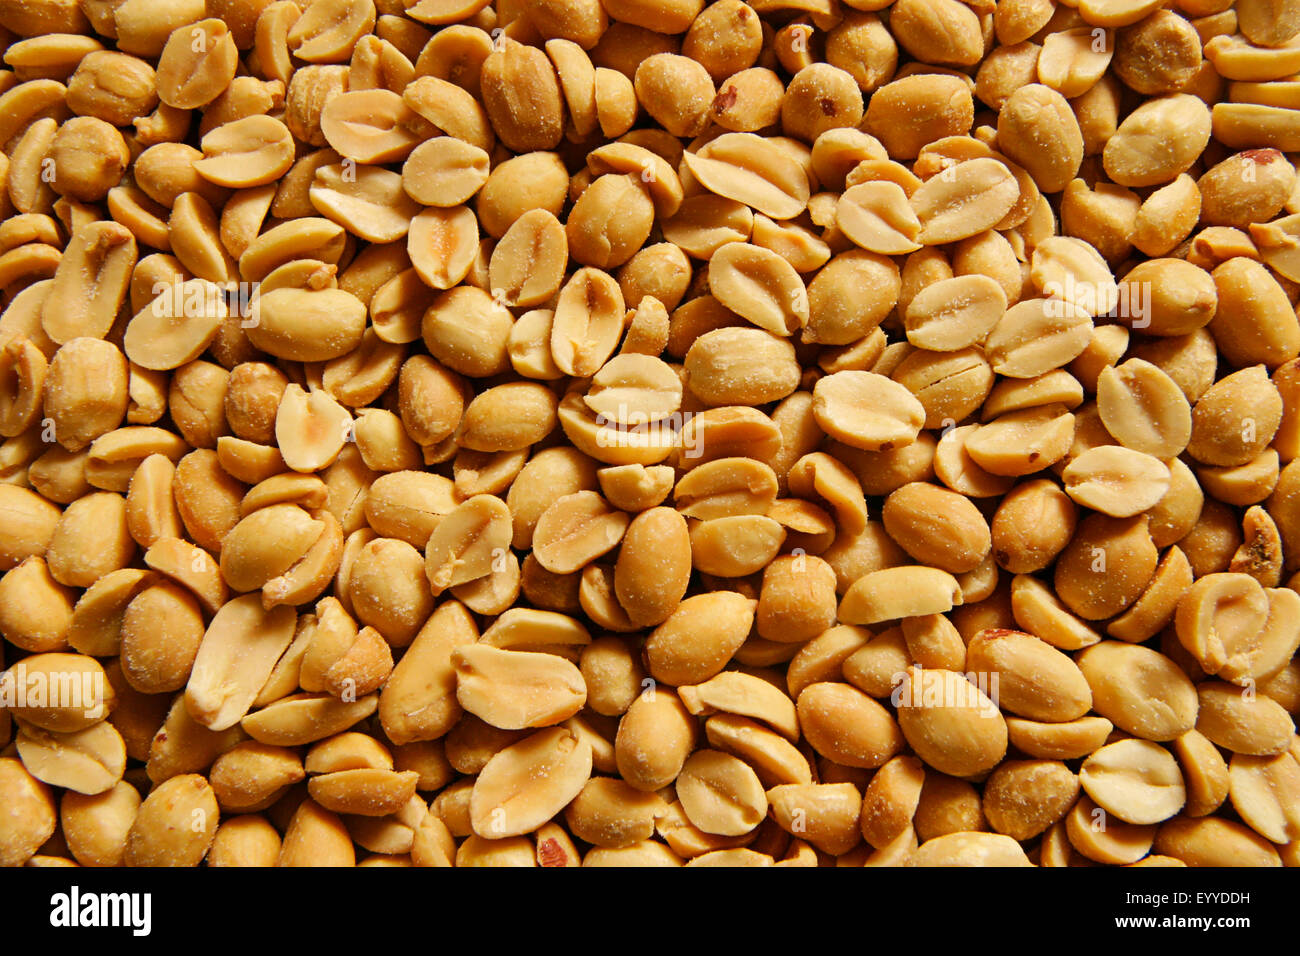 ground-nut, peanut (Arachis hypogaea), peanuts with salt Stock Photo